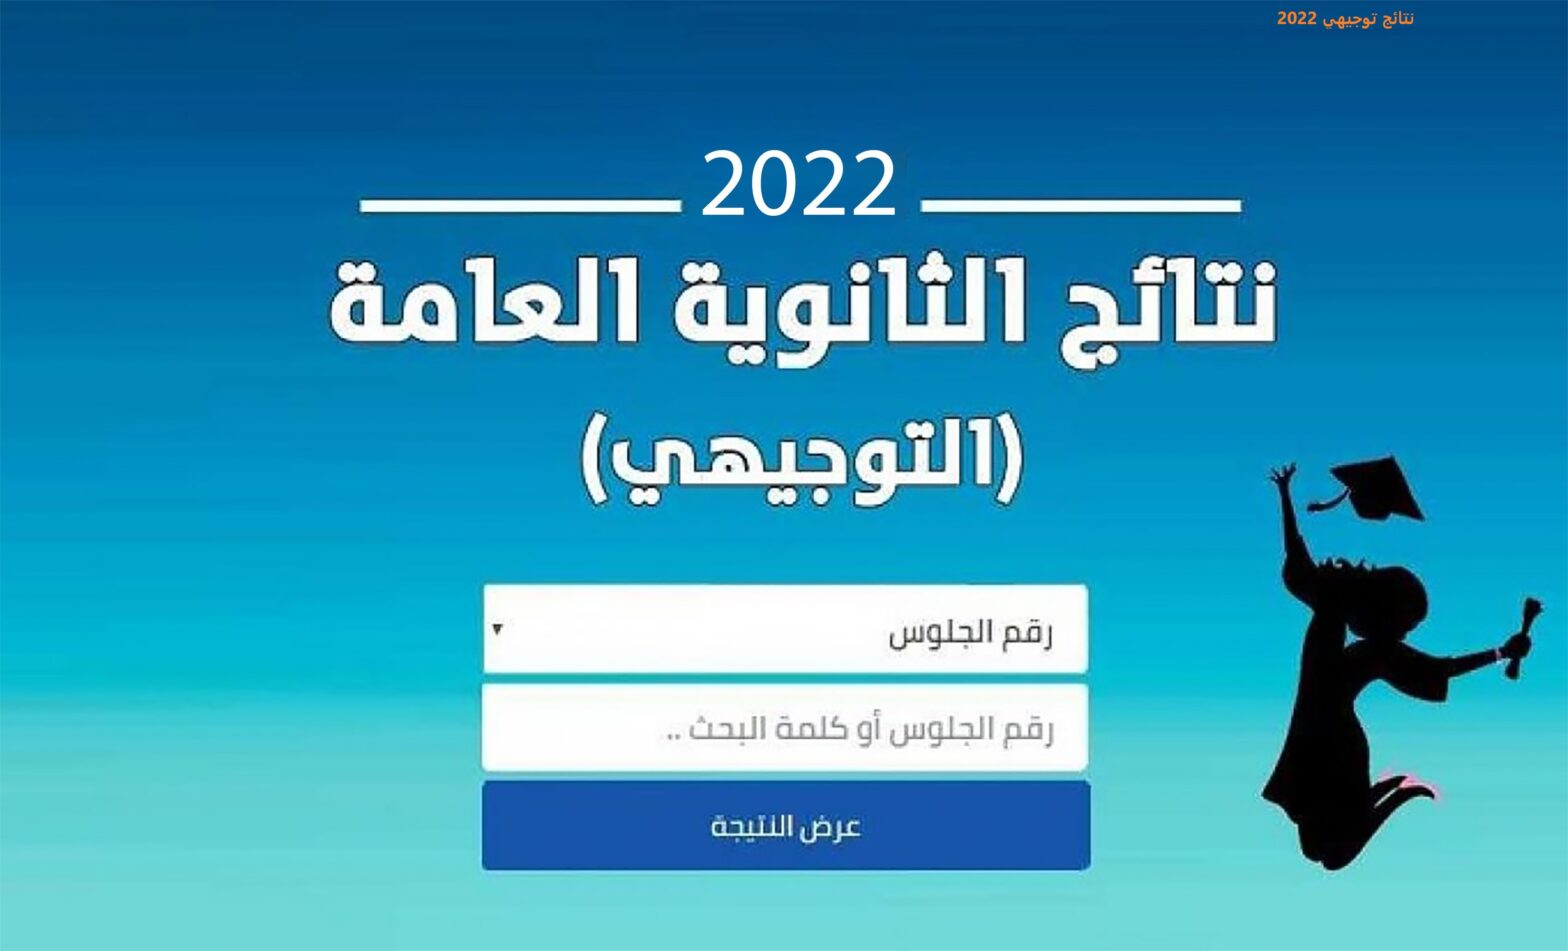 رسميا موعد نتائج التوجيهي 2022 الاردن رابط استعلام نتائج الثانوية العامة الأردنية